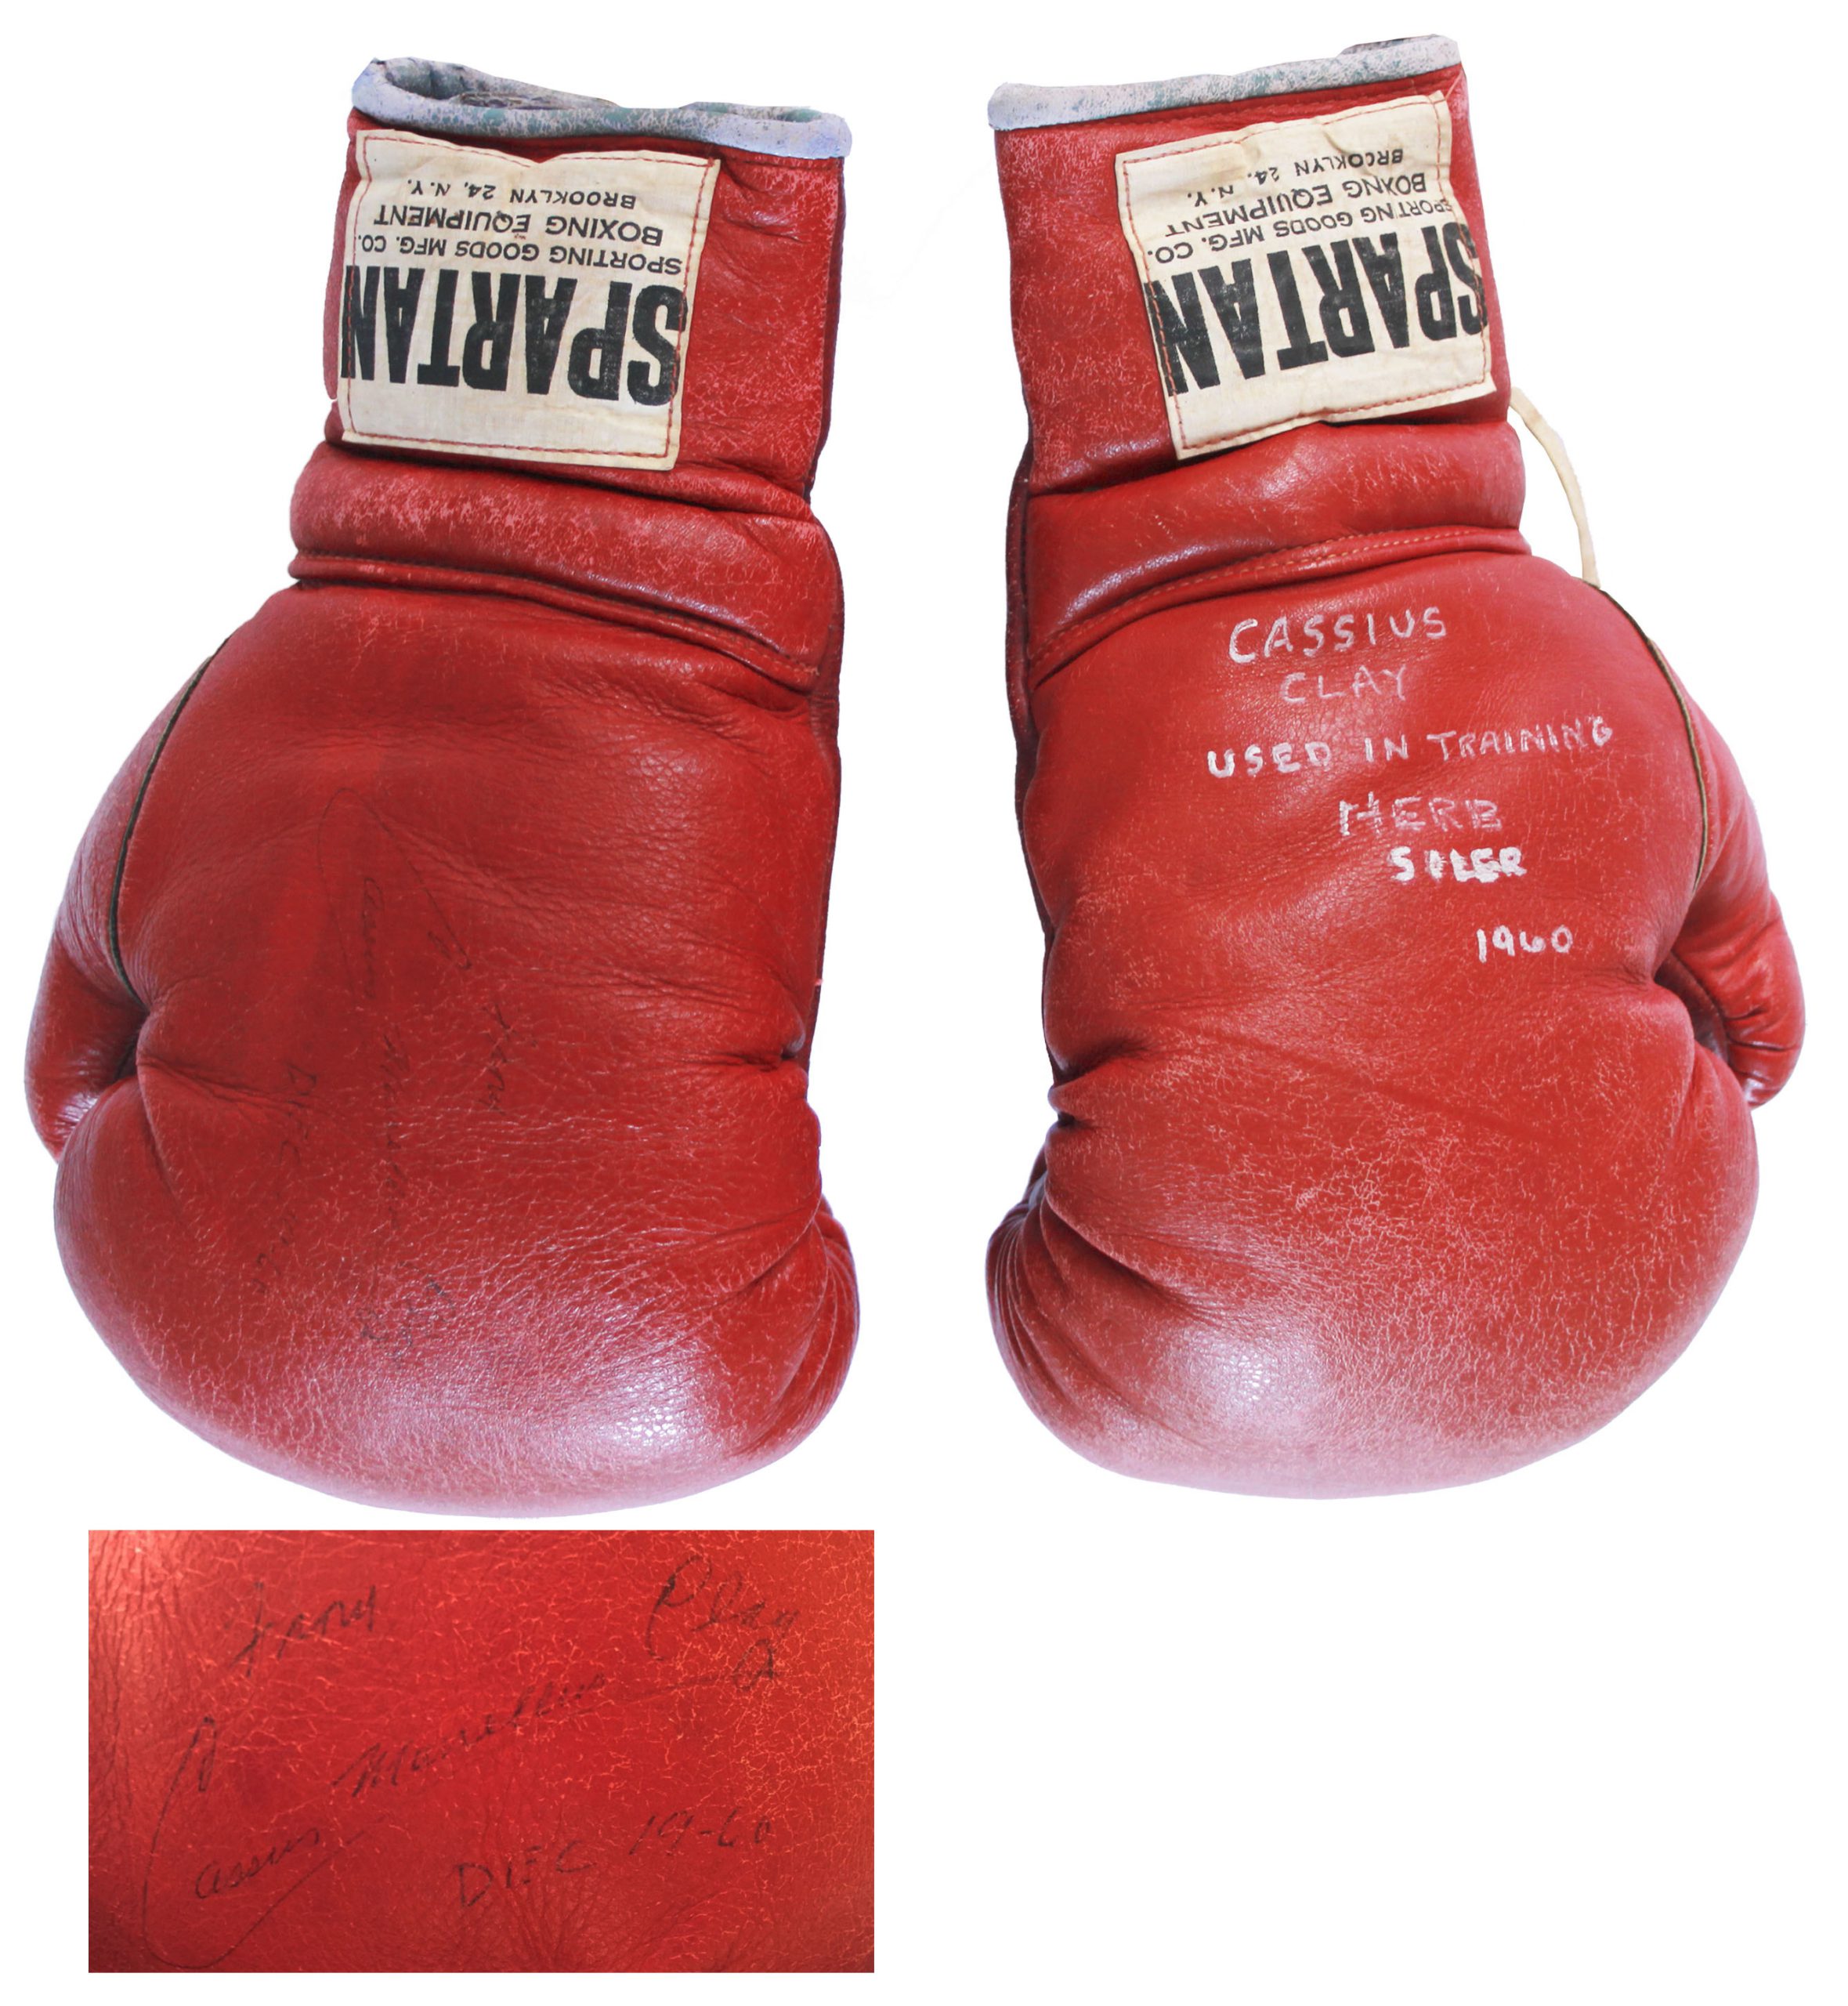 Brown Bomber's Gloves, Boxing gloves belonging to Joe Louis…